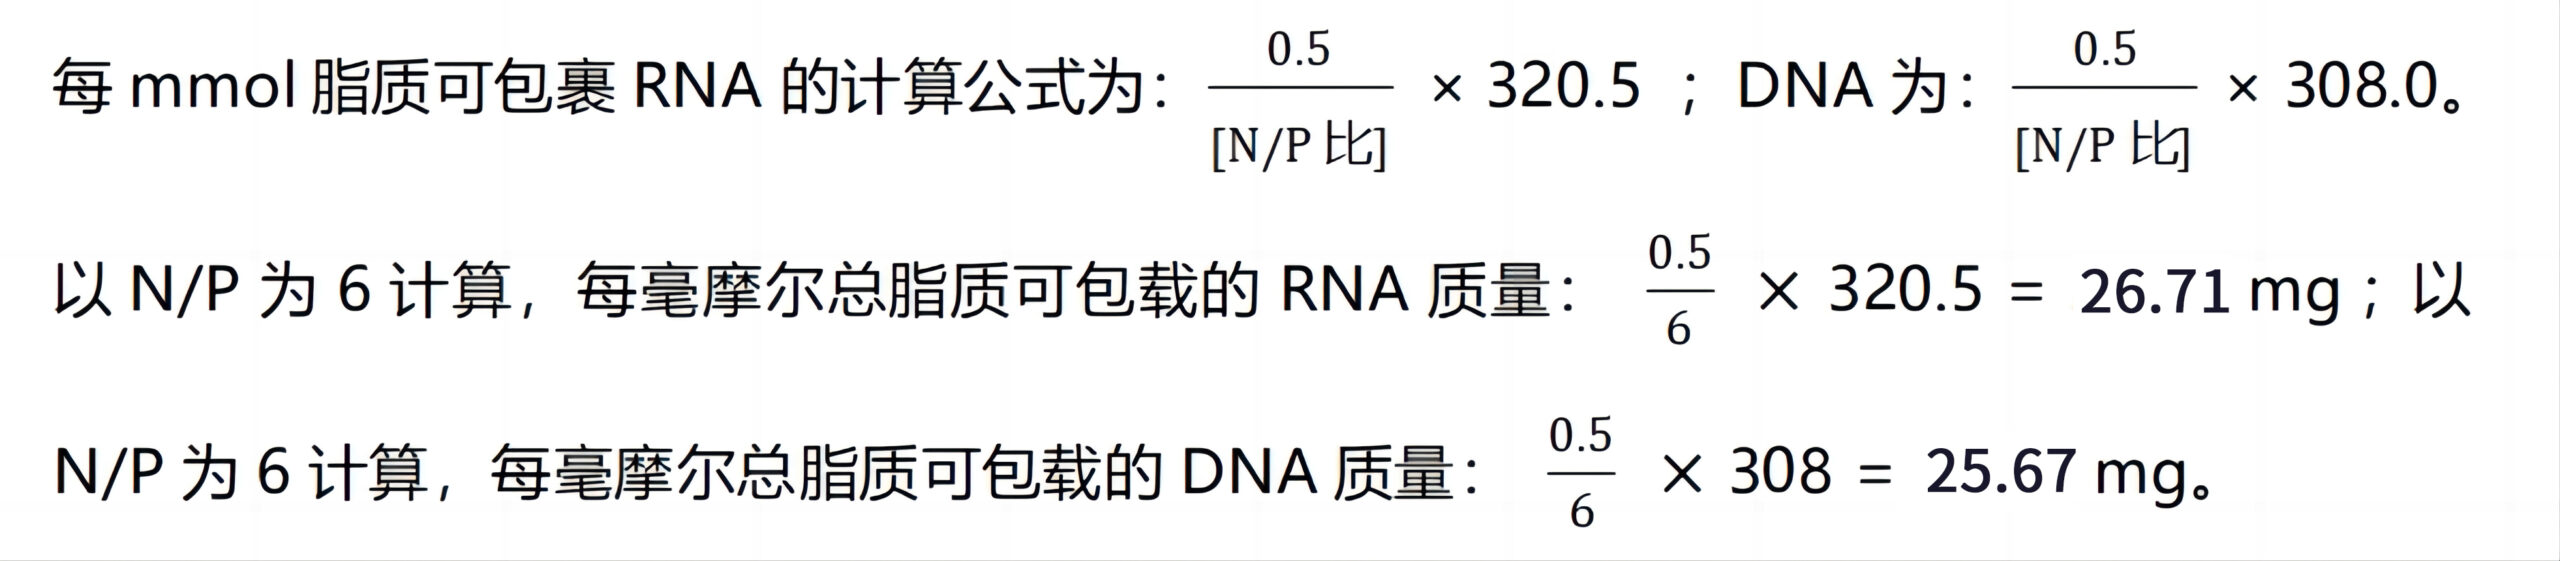 实验方案：基于微流控芯片制备核酸脂质纳米颗粒（mRNA-LNP合成为例）（附：LNP合成质量检测、转染细胞等实验方案）